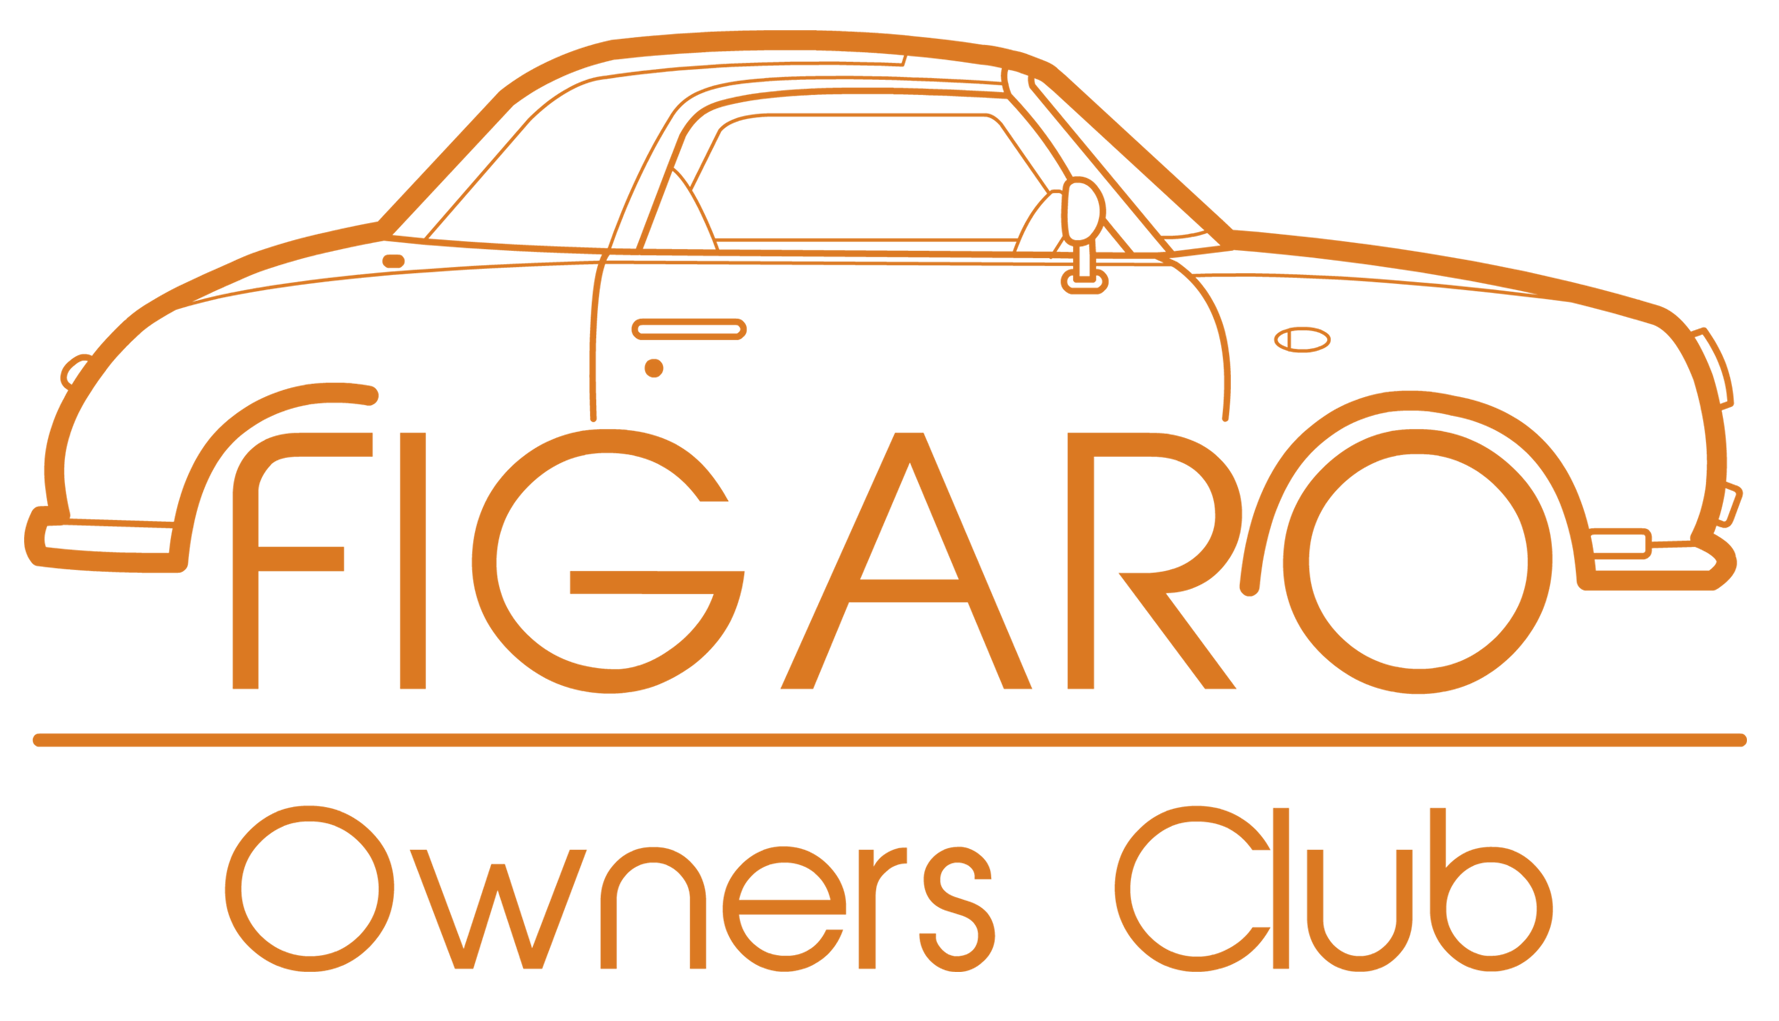 (c) Figaroownersclub.com